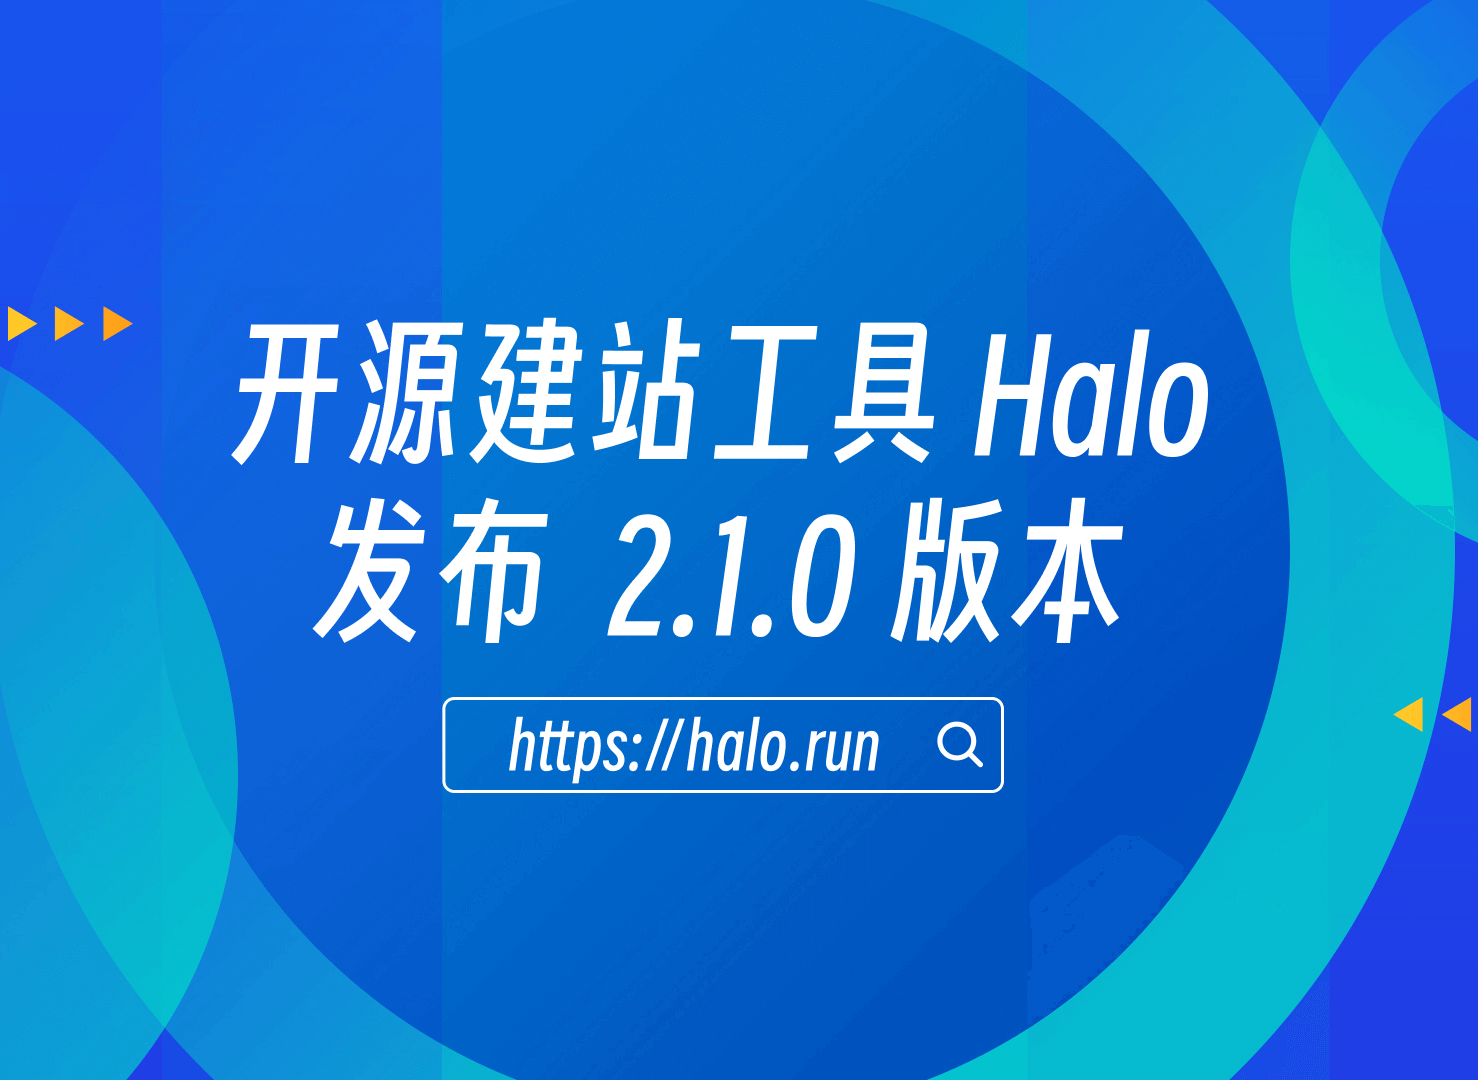 支持集成外部编辑器，Halo 2.1.0 发布